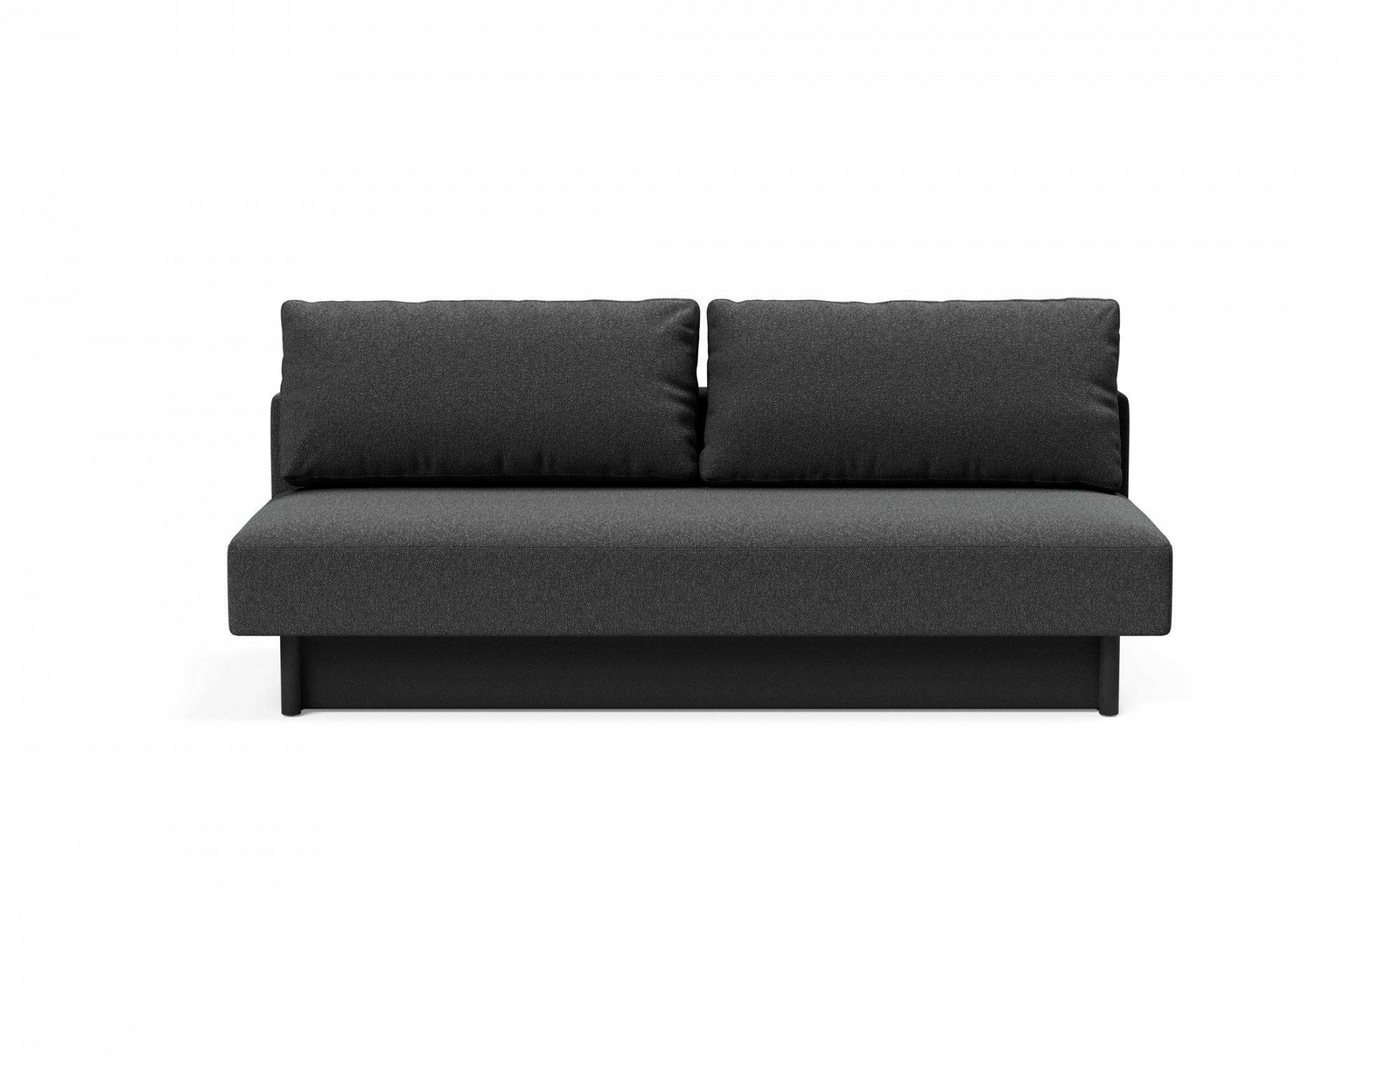 INNOVATION LIVING ™ 3-Sitzer Merga Schlafsofa, großem Bettkasten,minimalistischem Design, bedarf wenig Stellfläche von INNOVATION LIVING ™